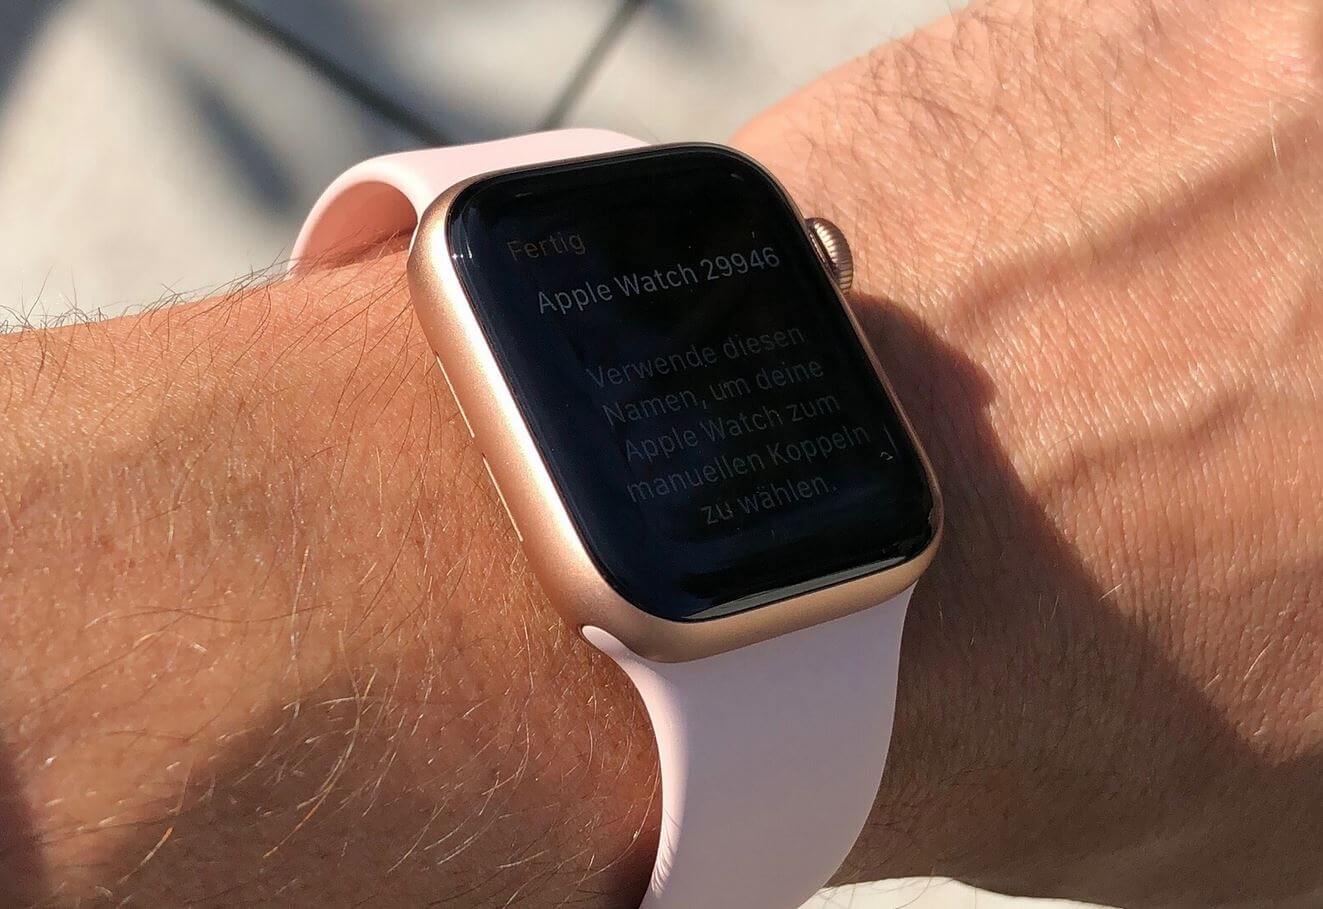 Уведомления на экране блокировки Apple Watch. Можно настроить Apple Watch так, чтобы уведомления не отображались, когда рука опущена. Фото.